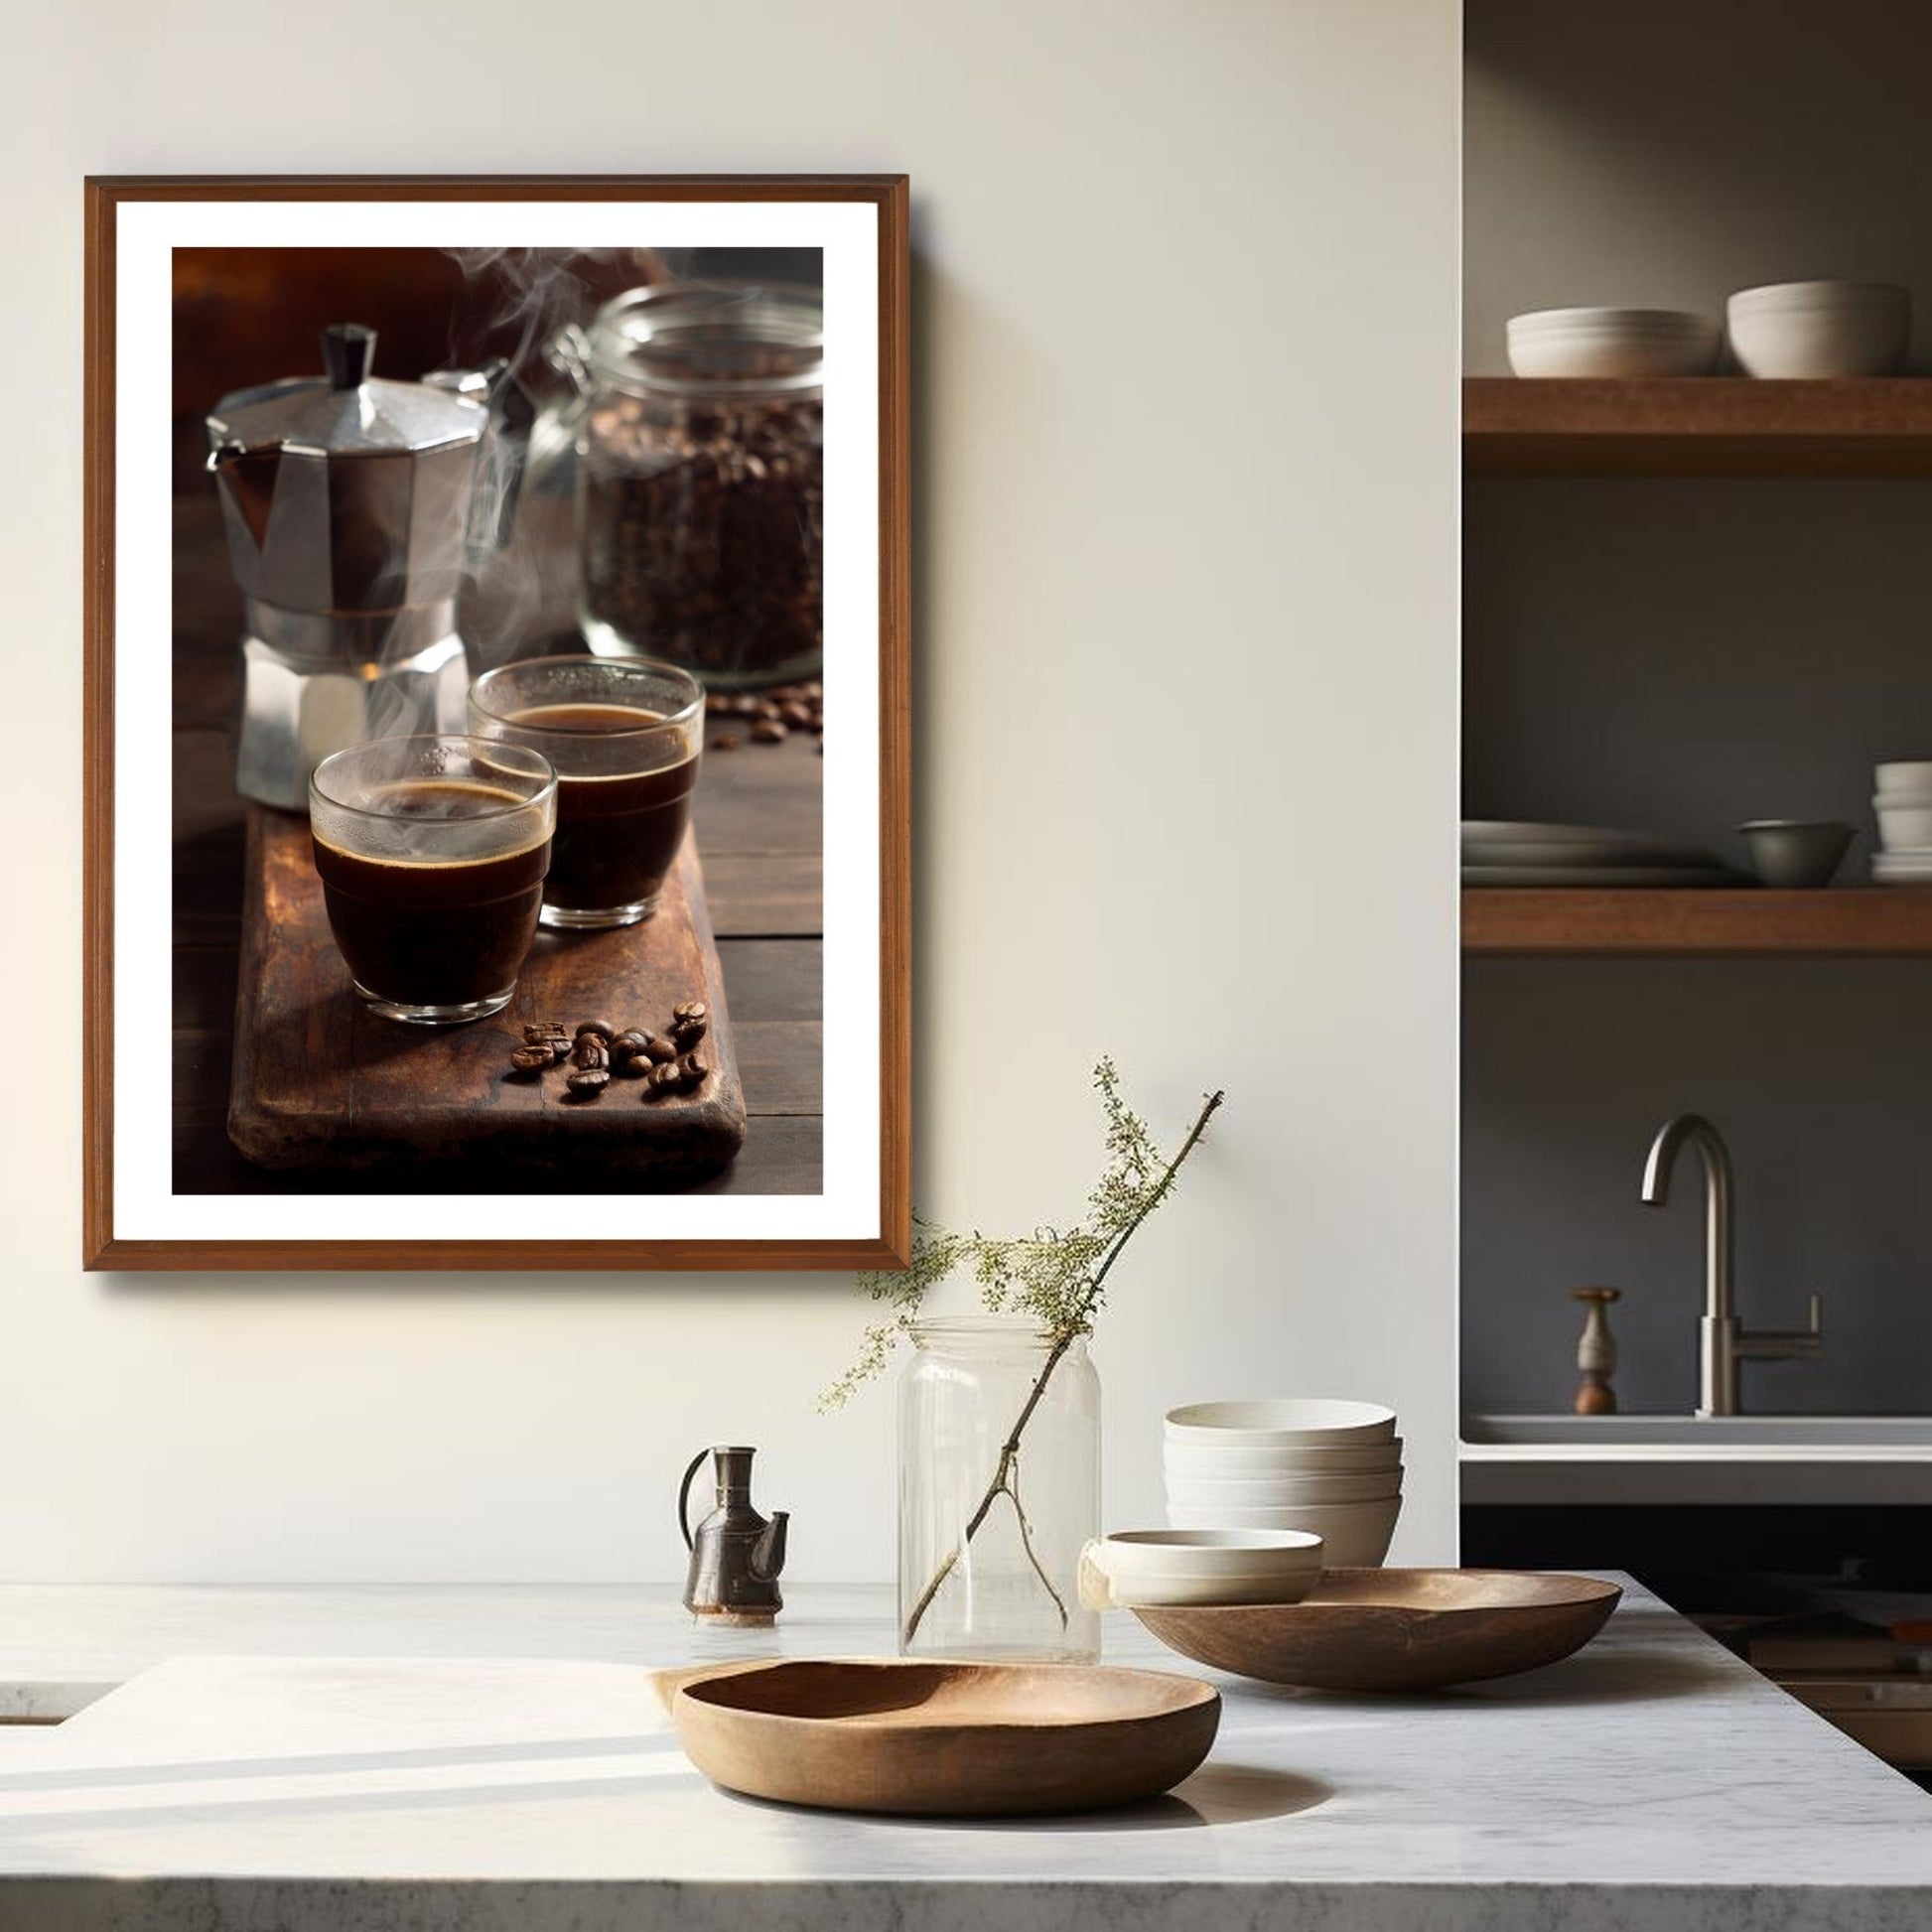 Dekorativ plakat av en tradisjonell Italiensk kaffebrygger og to rykende varme kopper espresso. Plakaten vil passe perfekt på en kjøkkenvegg, og skaper atmosfære på kjøkkenet. Det er nesten så man kan kjenne den gode kaffelukta. Plakaten har en hvir kant som gir bildet dybde og fremhever motivet. Illustrasjonen viser plakaten i eikeramme som henger på en vegg over en kjøkkenbenk.